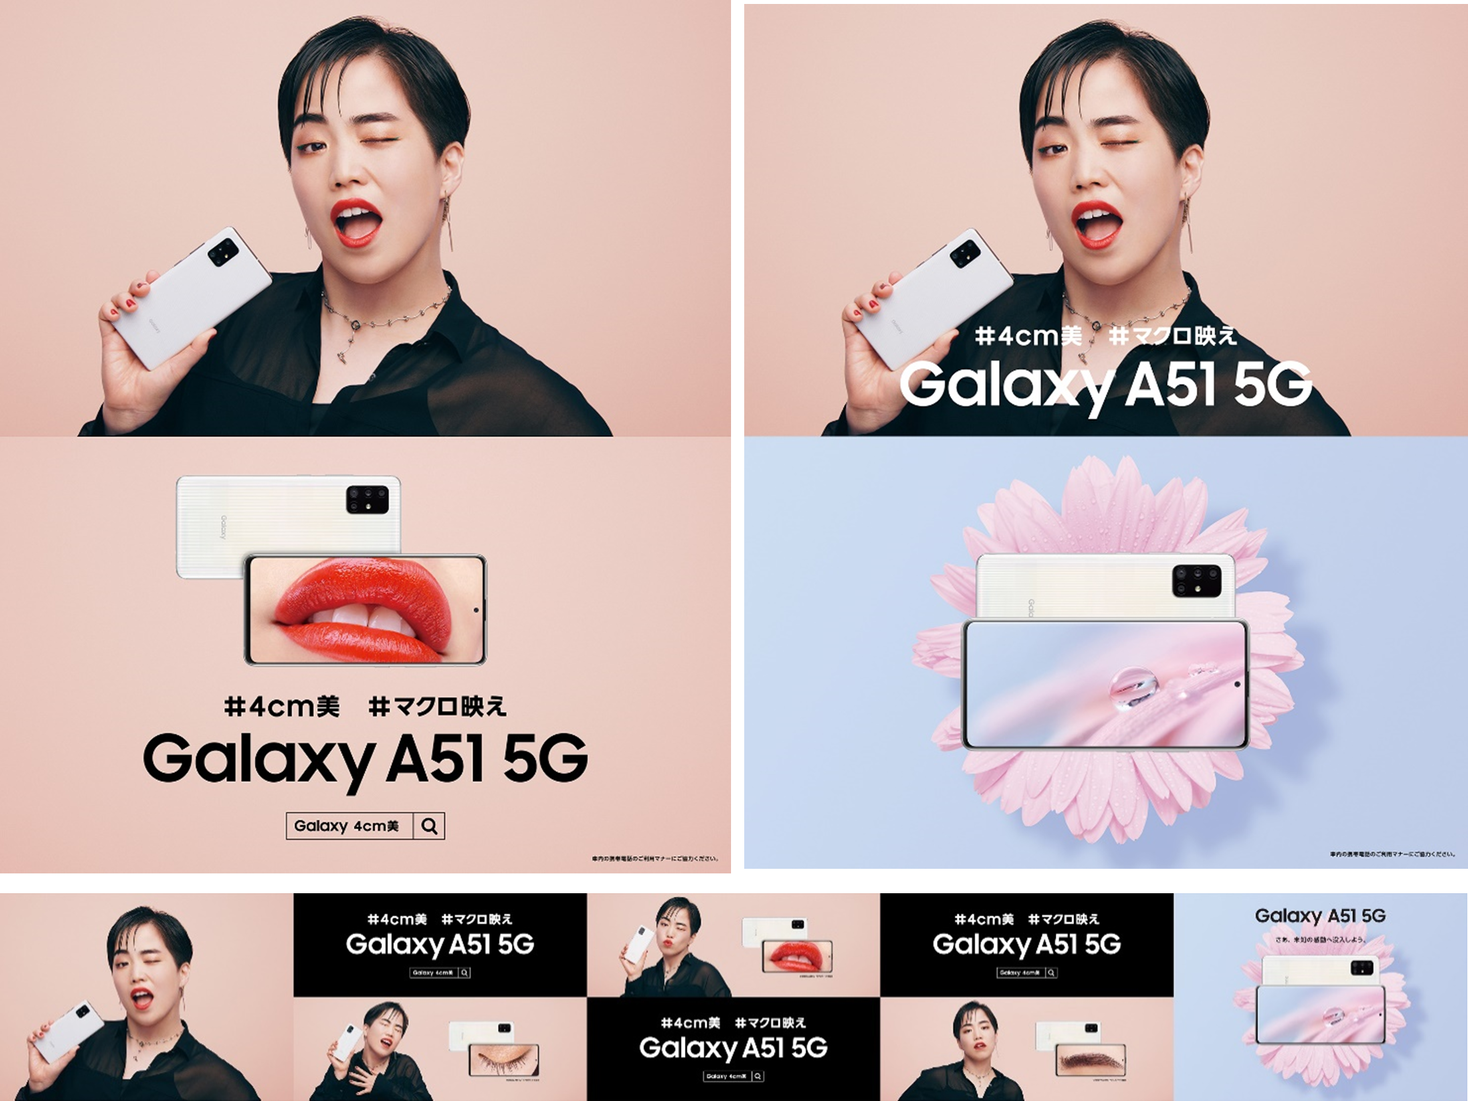 Galaxy A51 5g 4cm美 モデル ゆりやんレトリィバァさんがマクロカメラで自慢の顔パーツを堂々披露 12月7日より 東京駅 渋谷駅 大阪駅などで掲出開始 Galaxyのプレスリリース